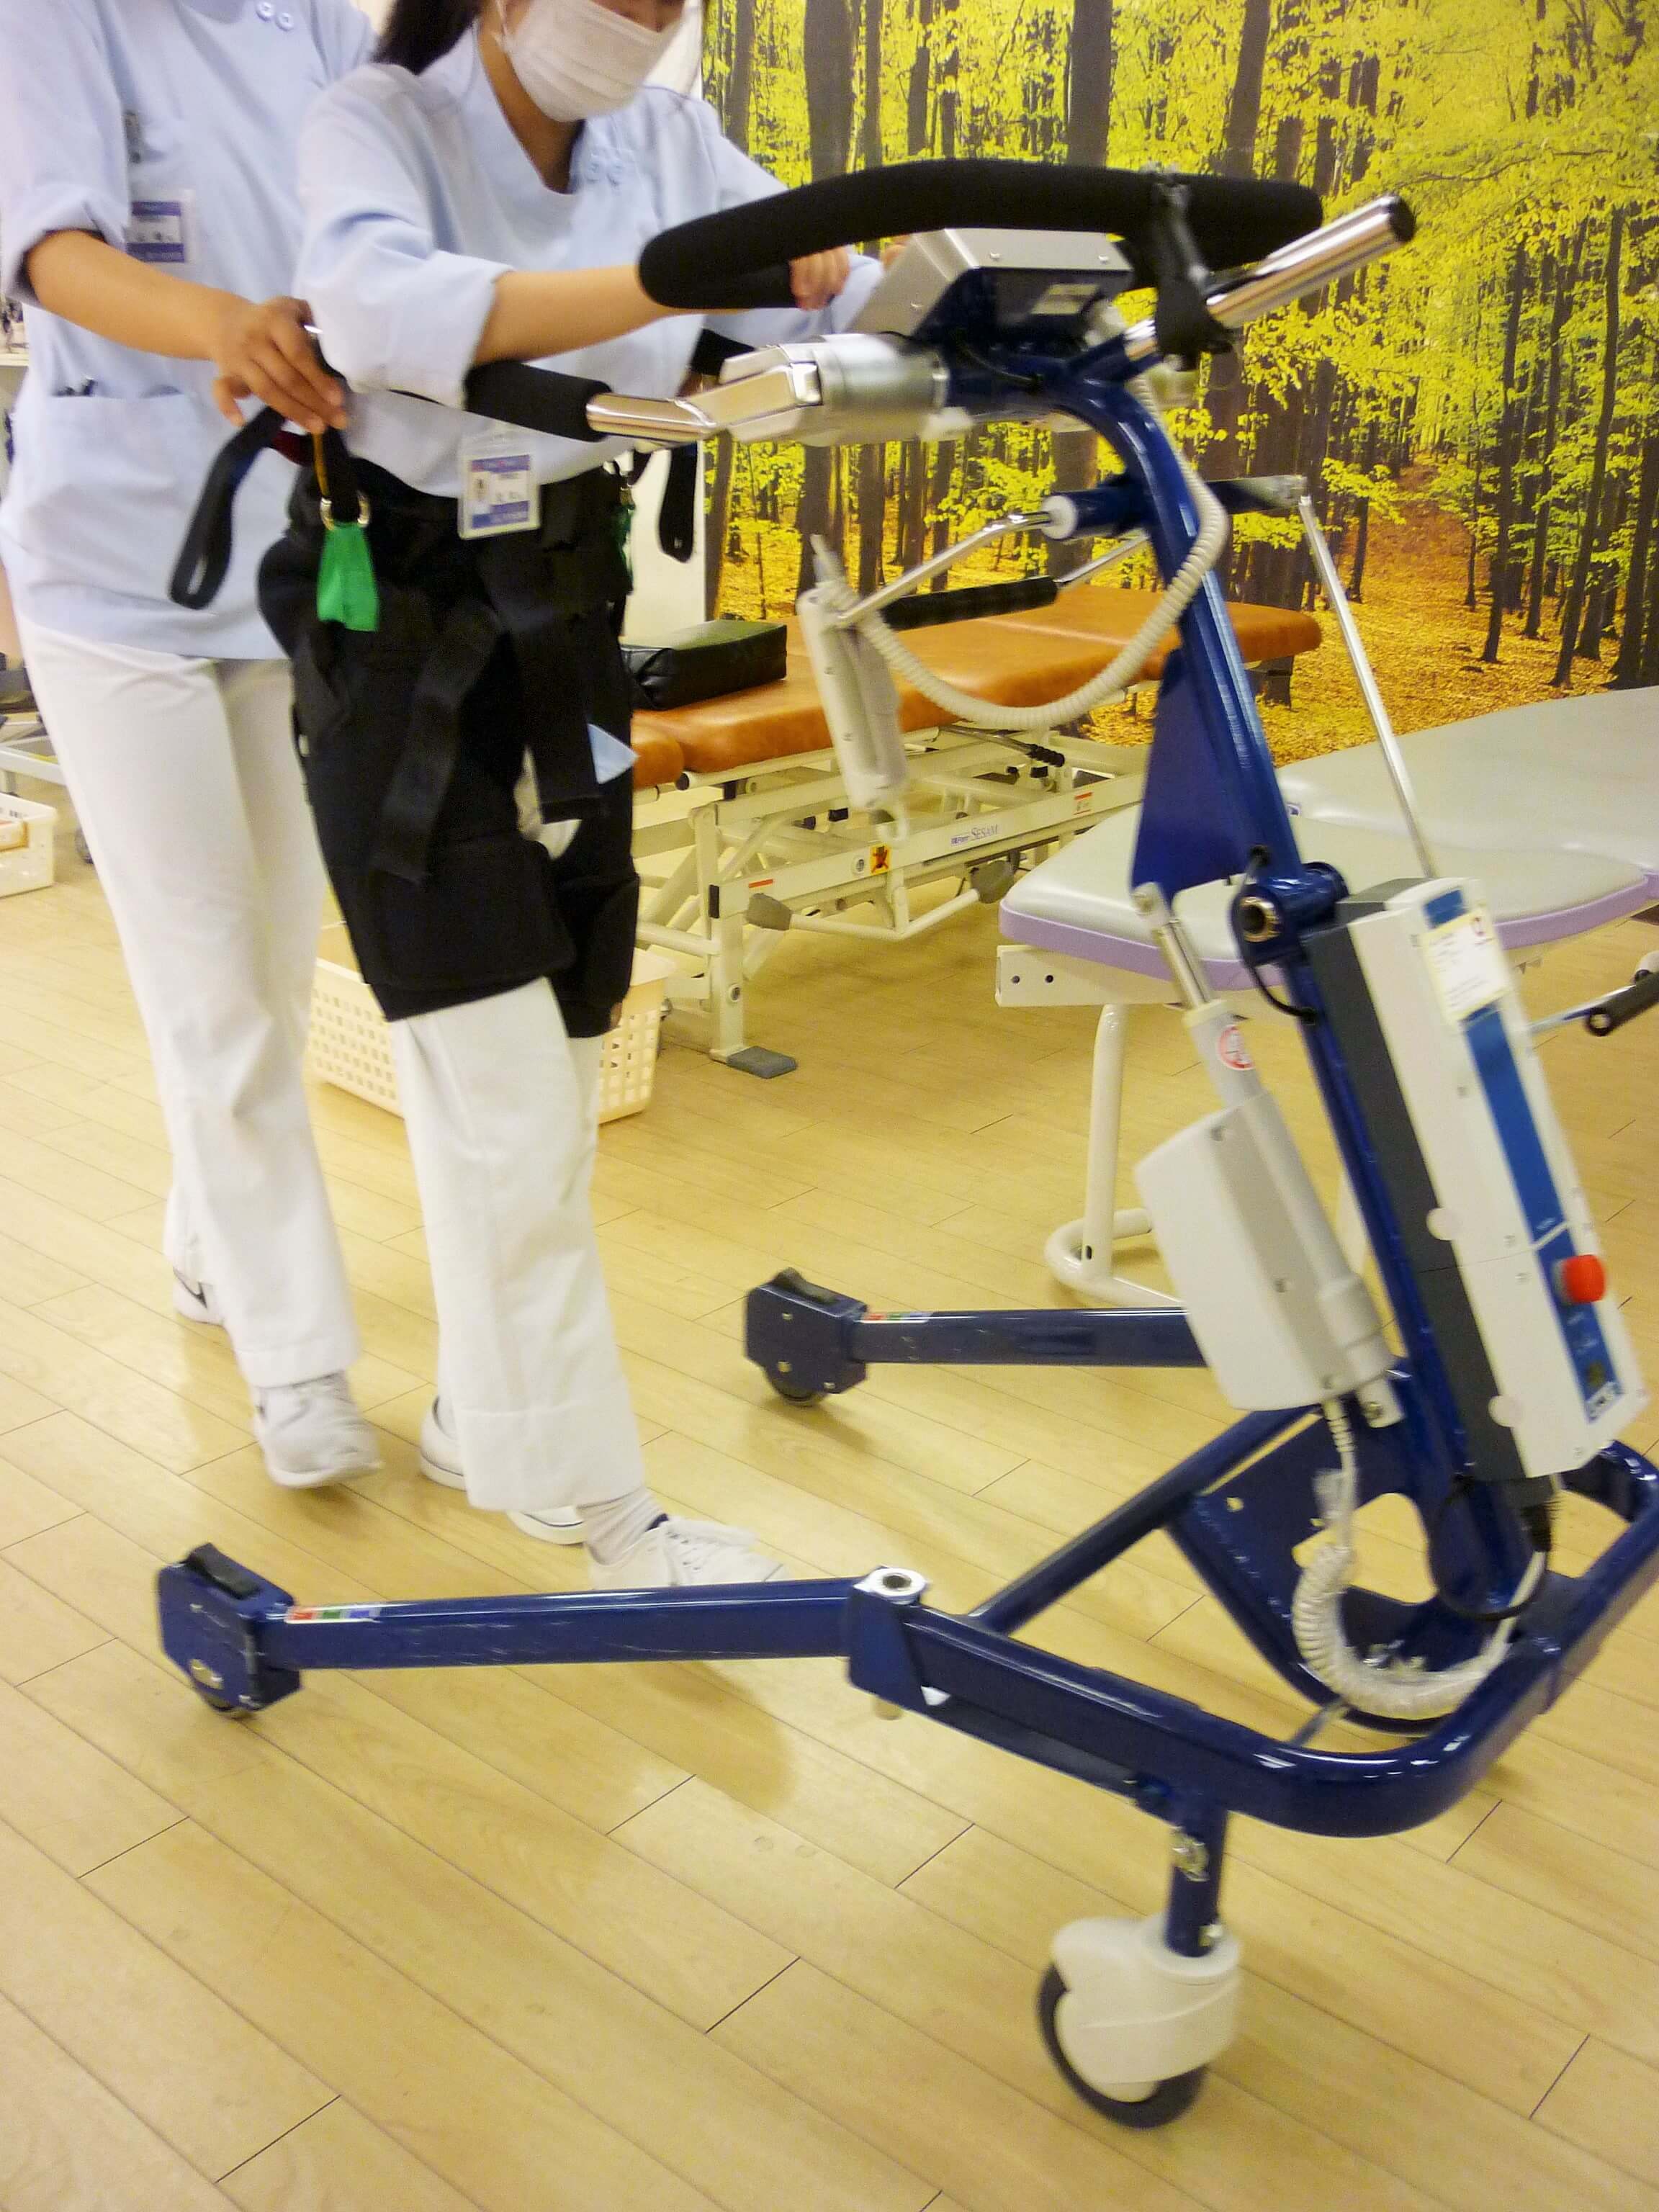 歩行訓練機器POPO（ポポ）の普及について